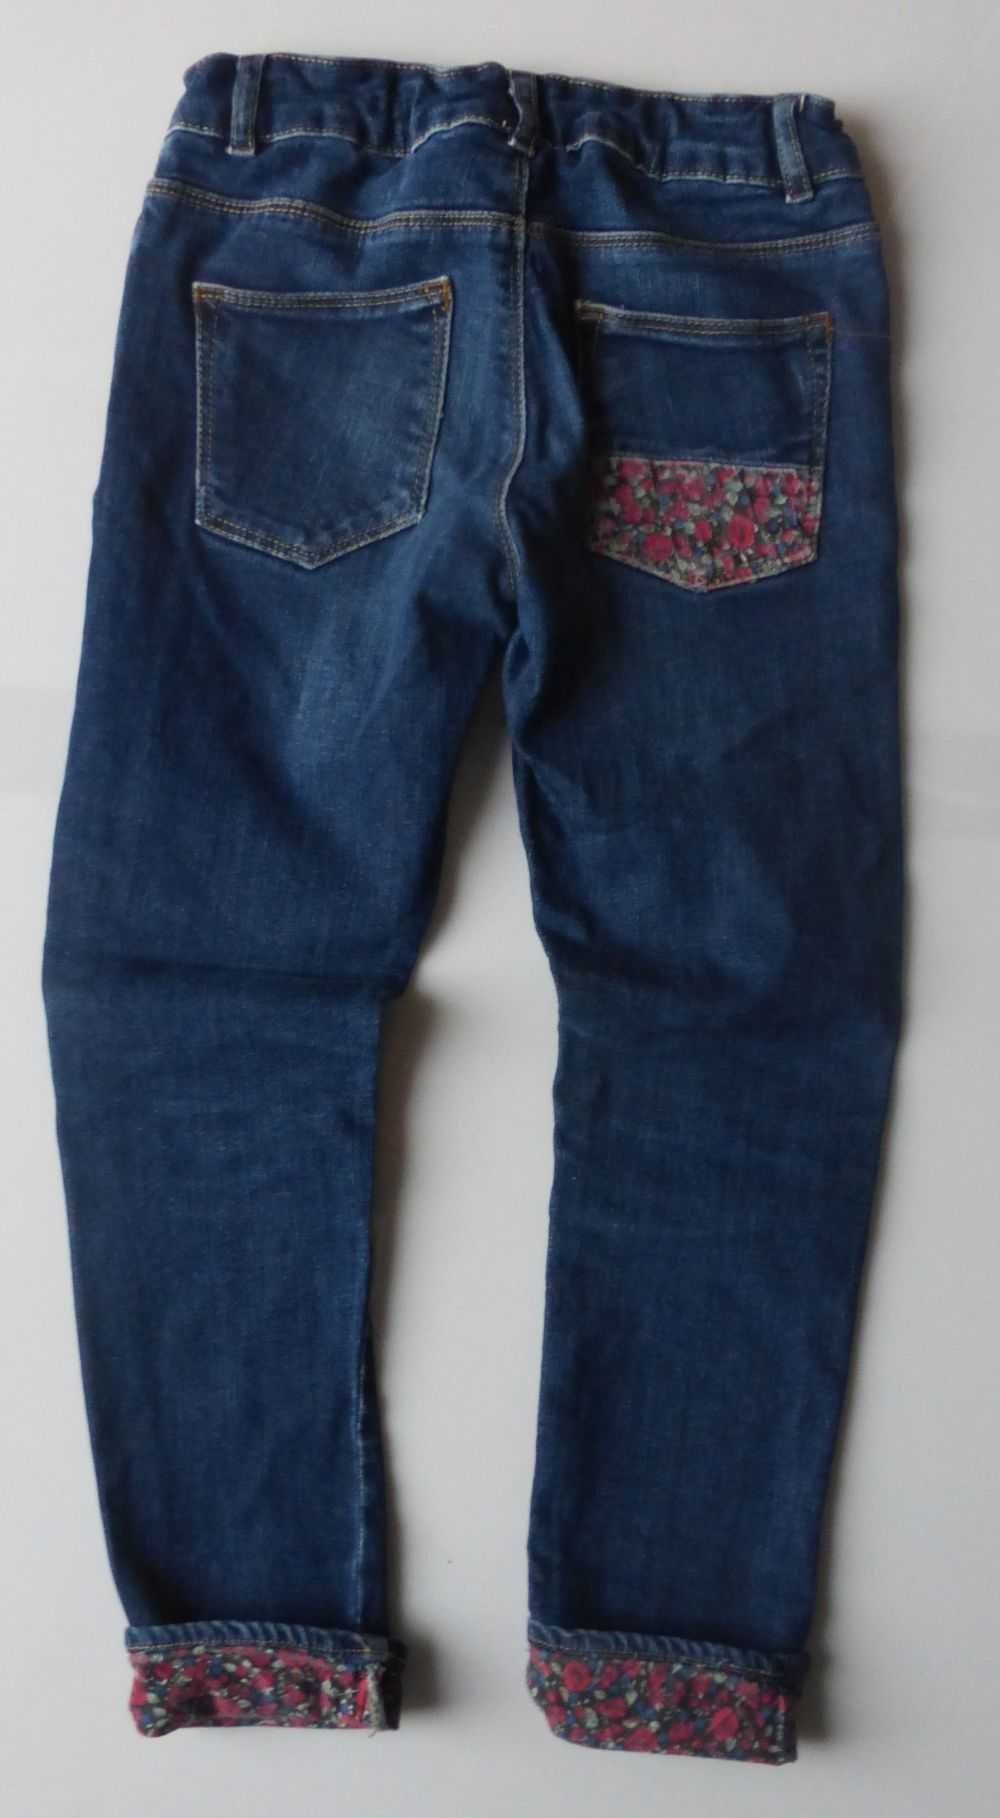 Spodnie jeansy ZARA GIRLS 128 kwiaty wywijane nogawki dżinsy